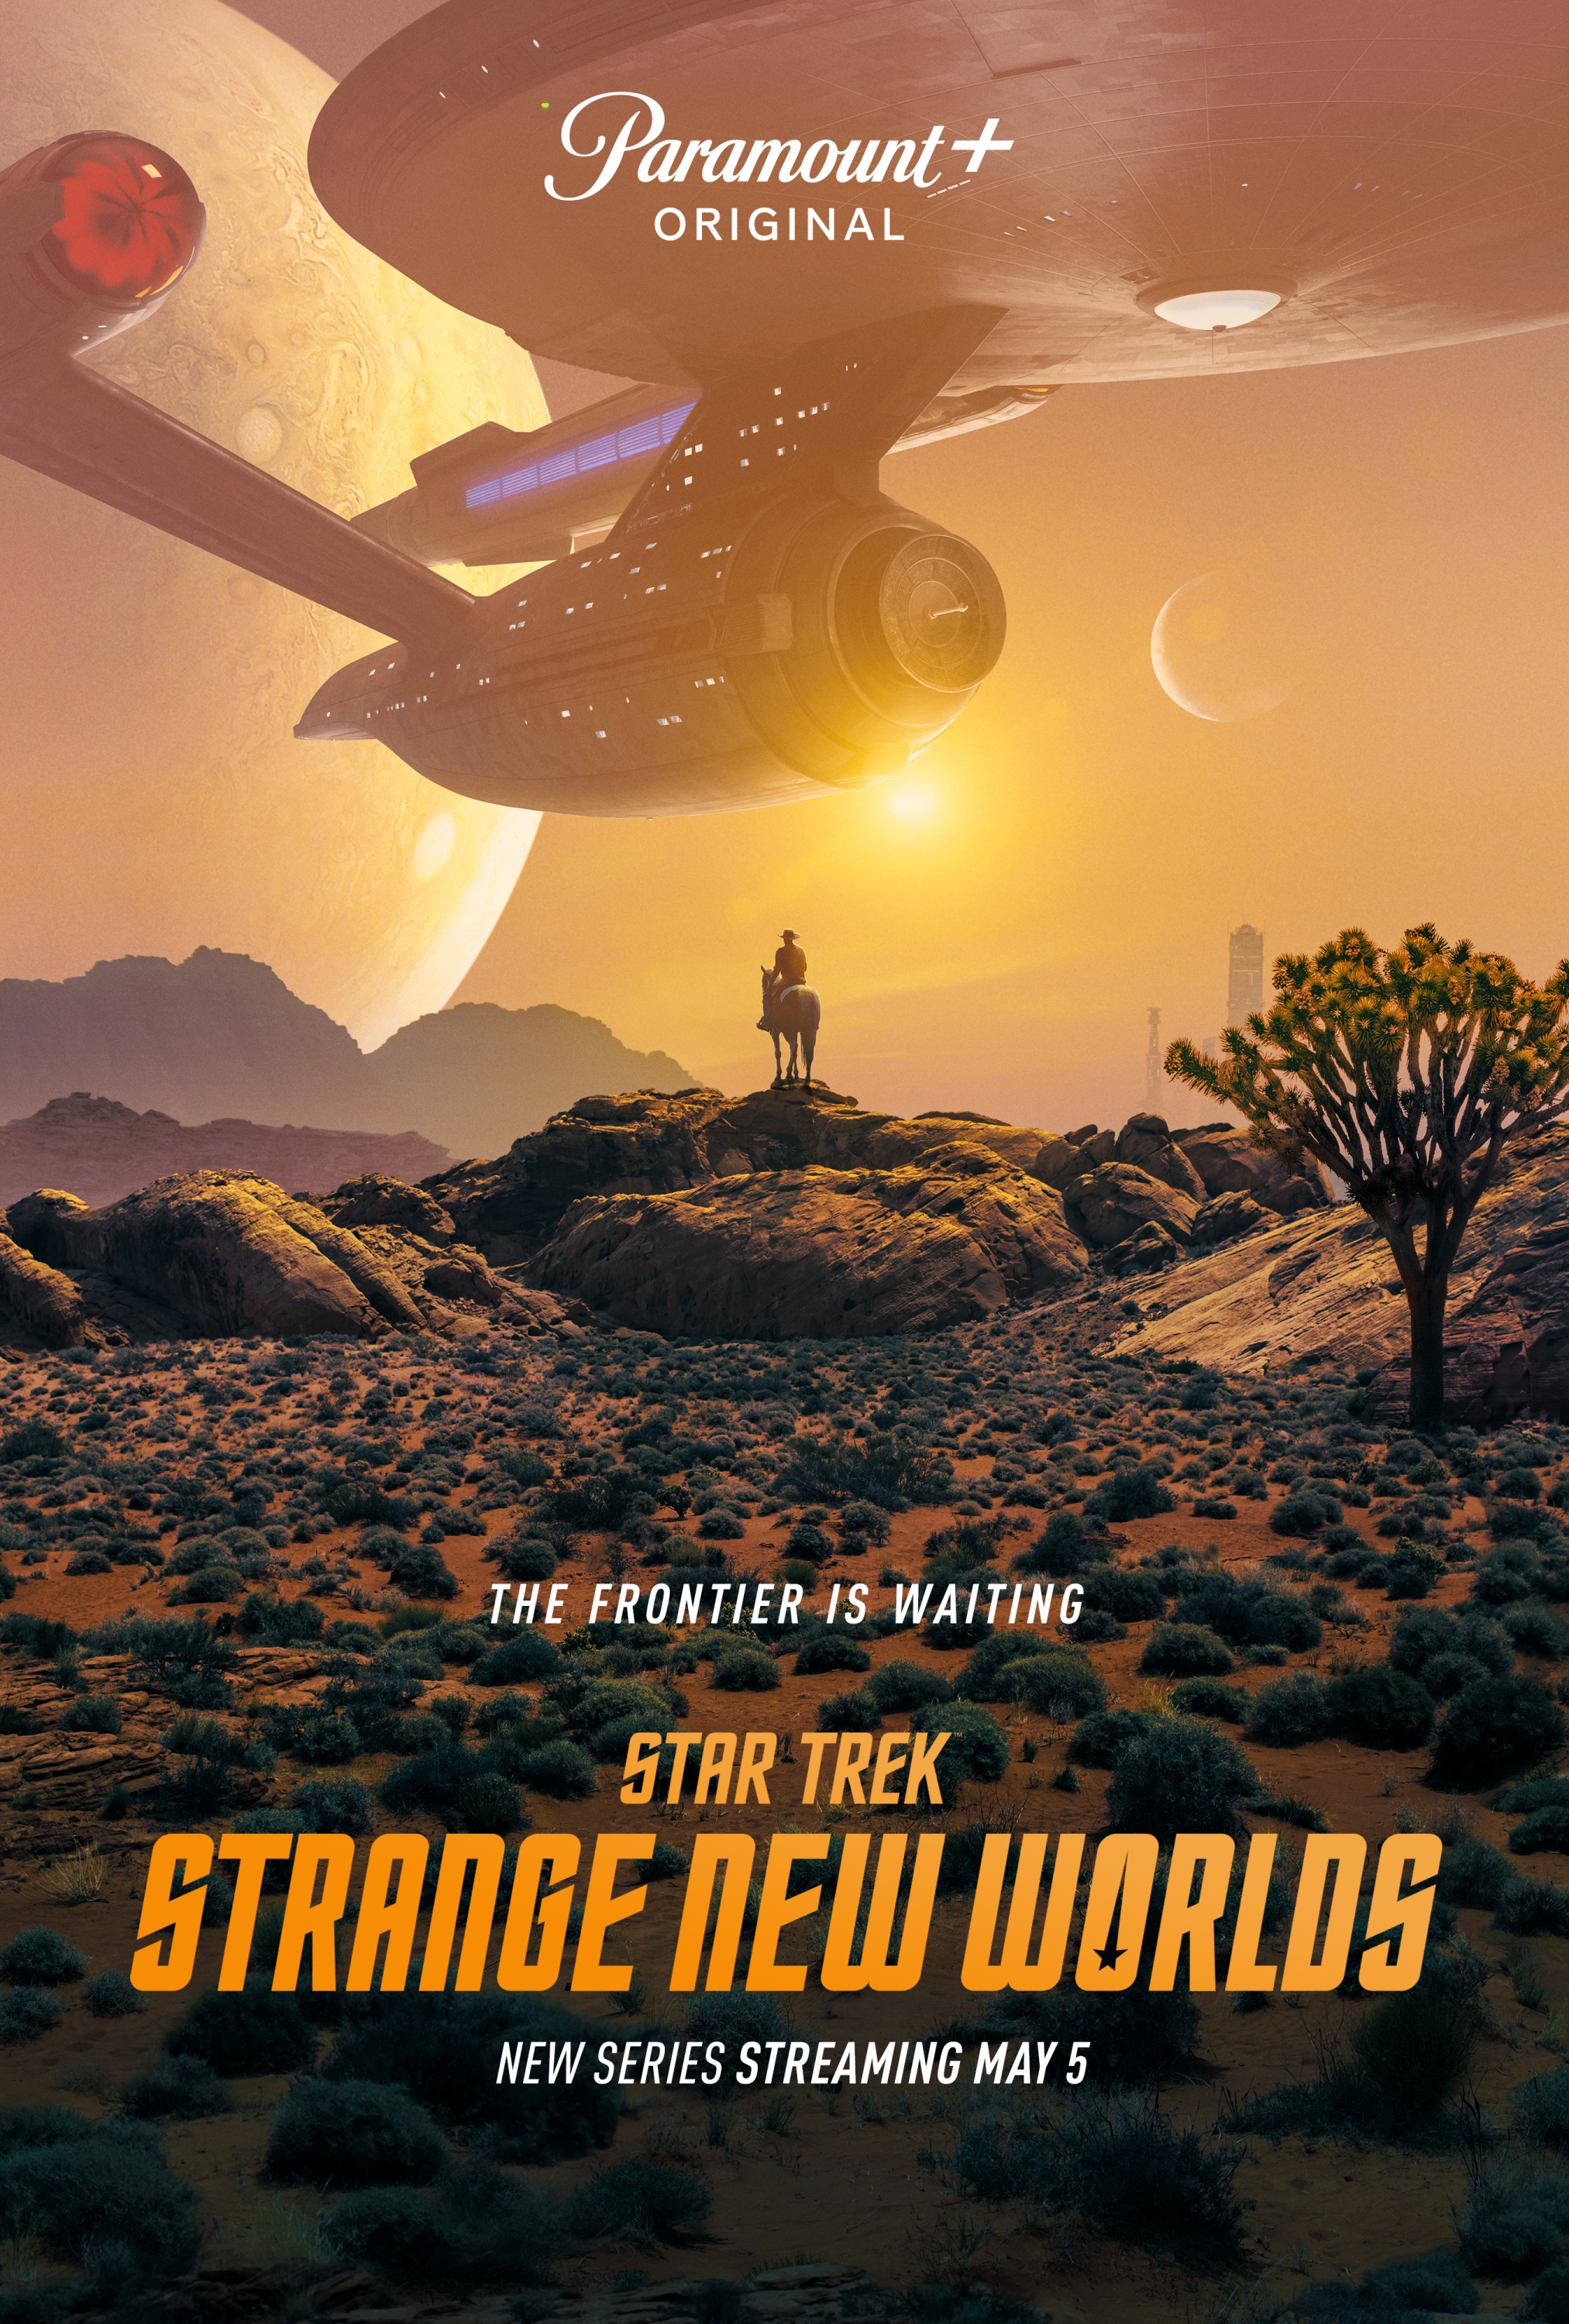  Star Trek: Strange New Worlds S01E06 (EN)[WebRip][2160p] = CSFD 78%